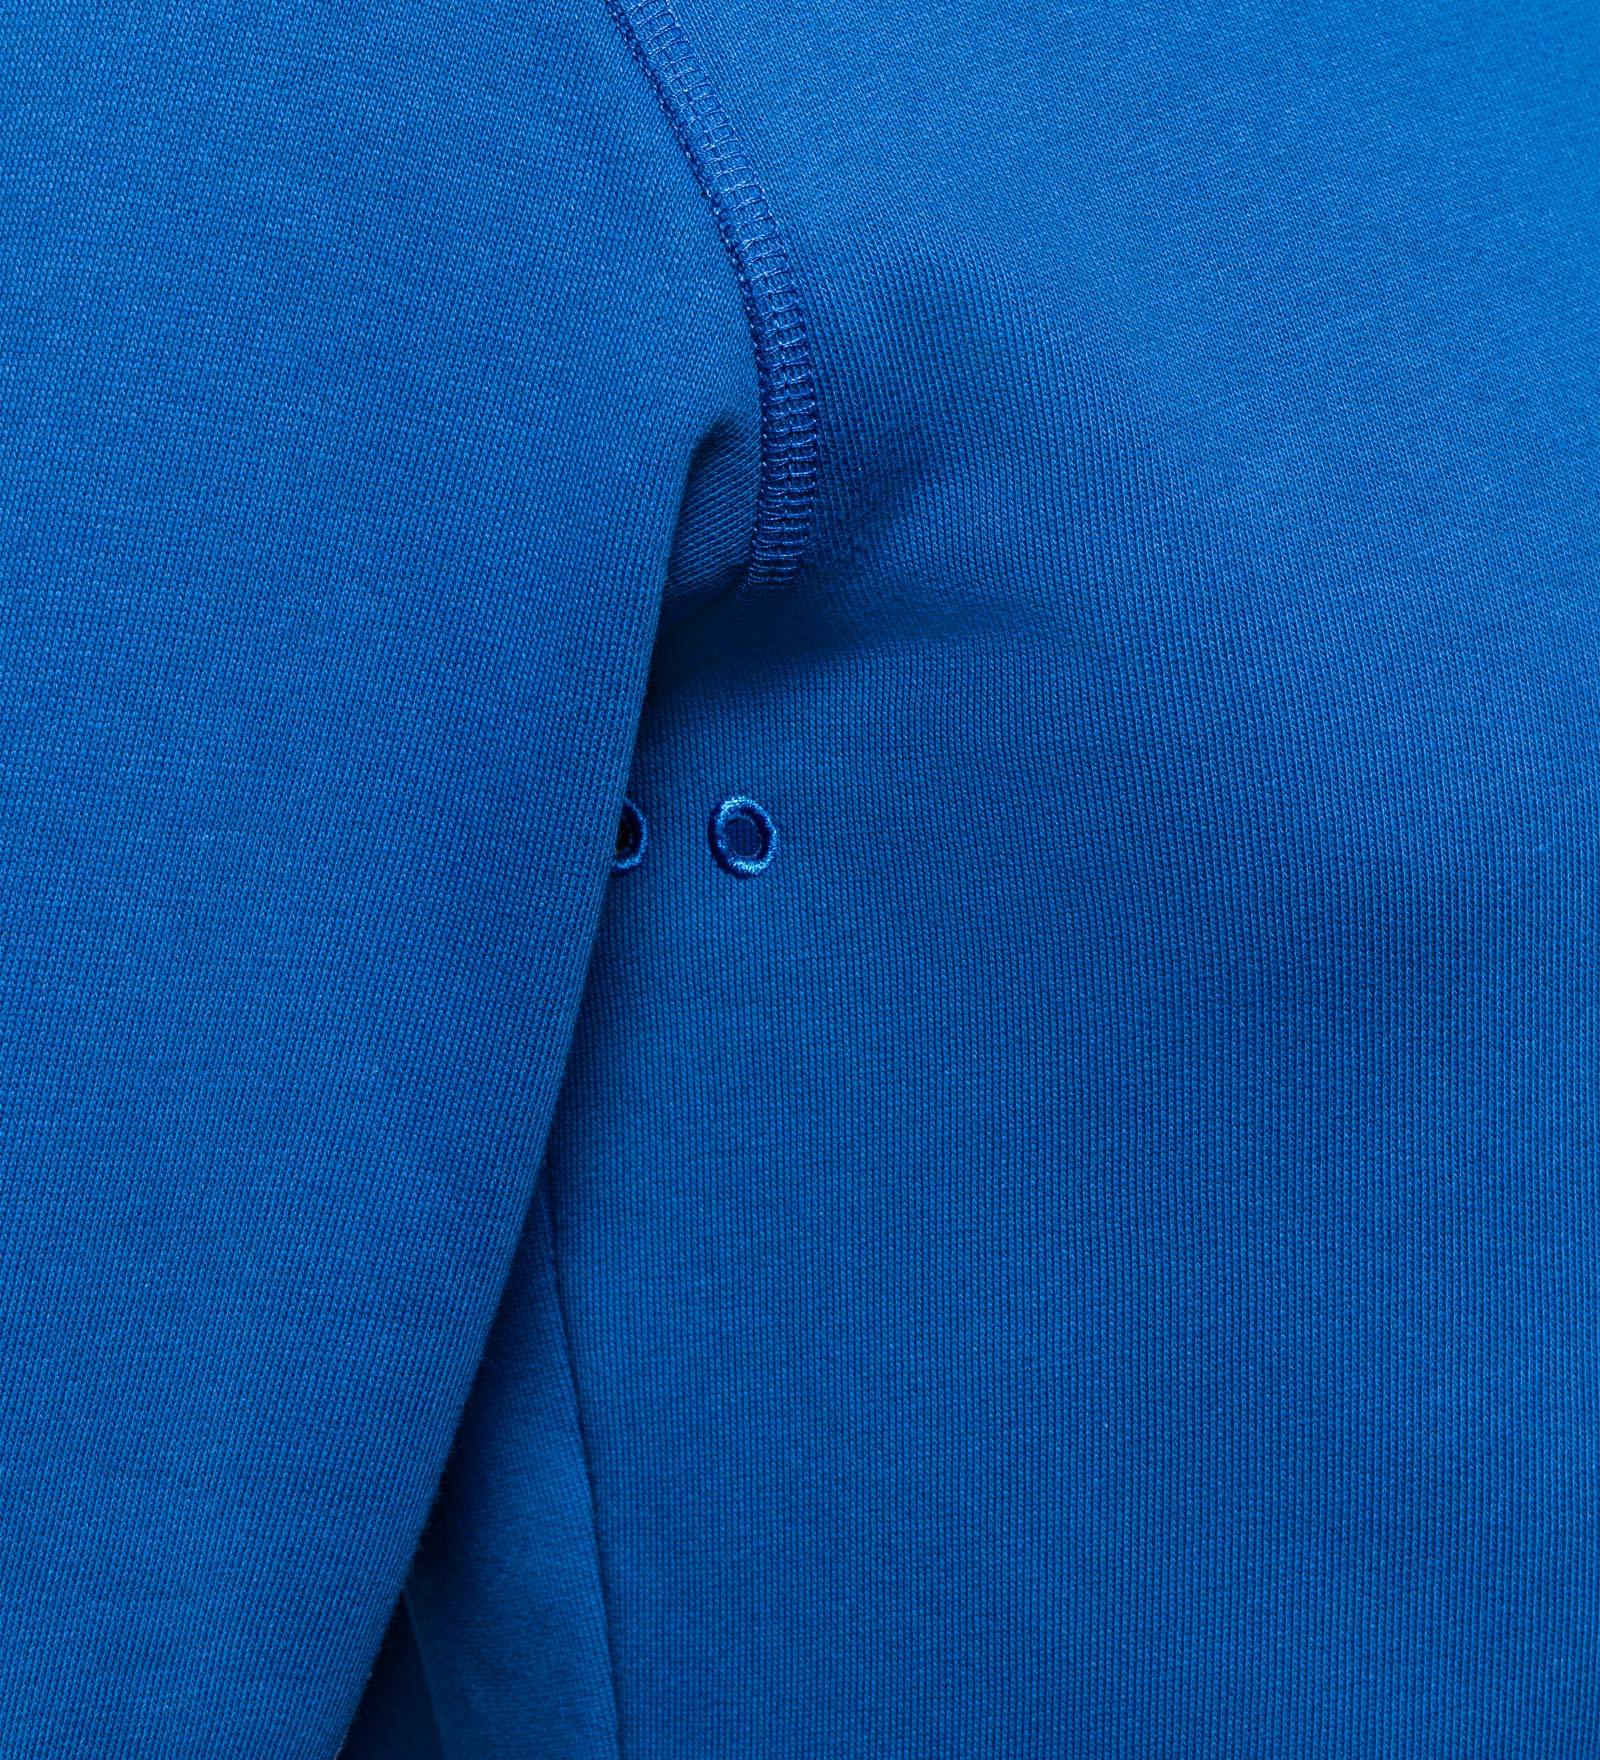 CODE-ZERO Sweatshirt Men Upwind Blue XXL | CODE-ZERO